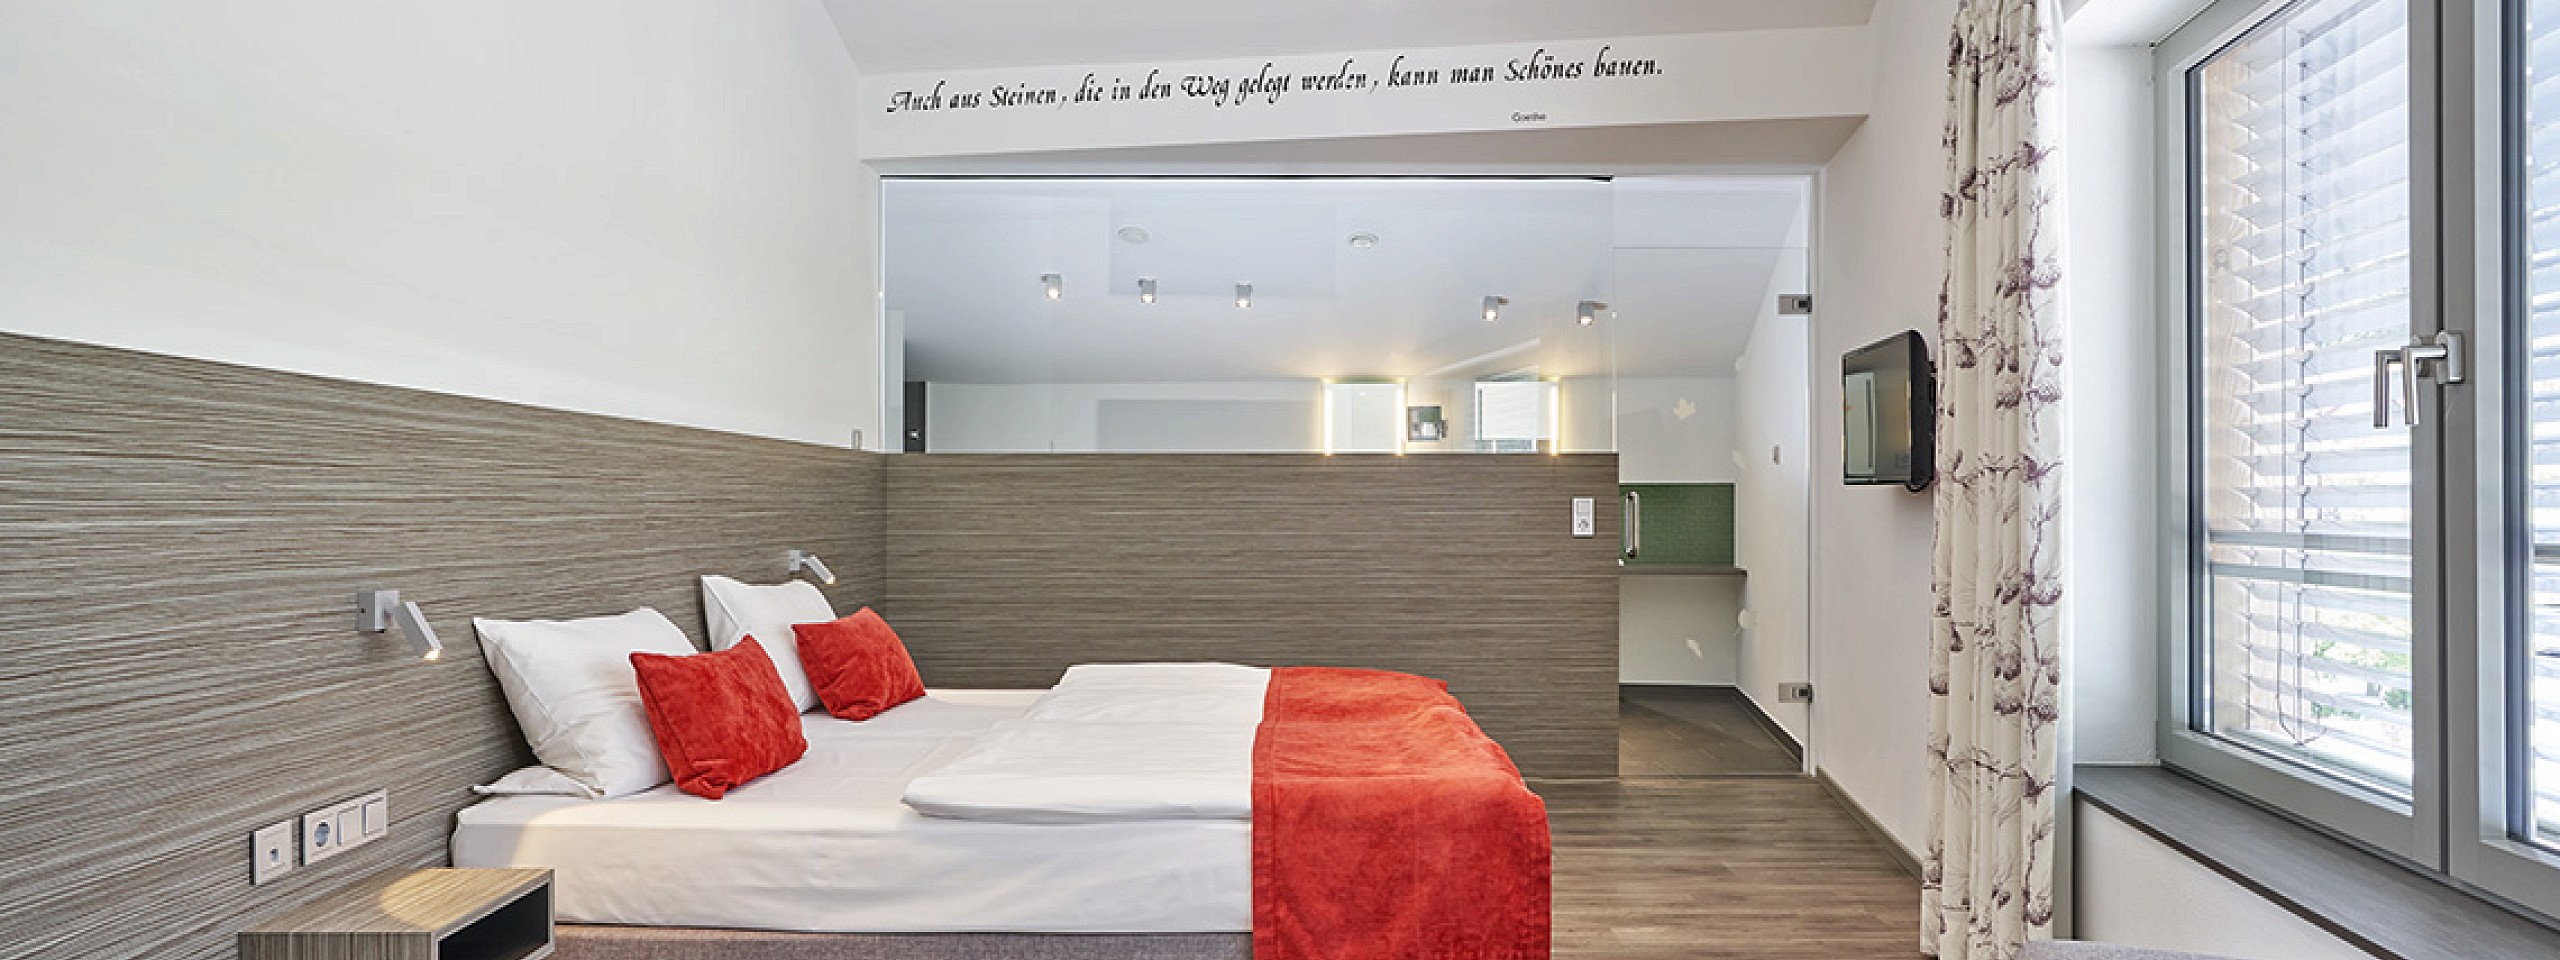 Edles Hotelzimmer im Schwarzwald mit langer Eckbank und prächtigen Holzmöbeln sowie Kronleuchter.